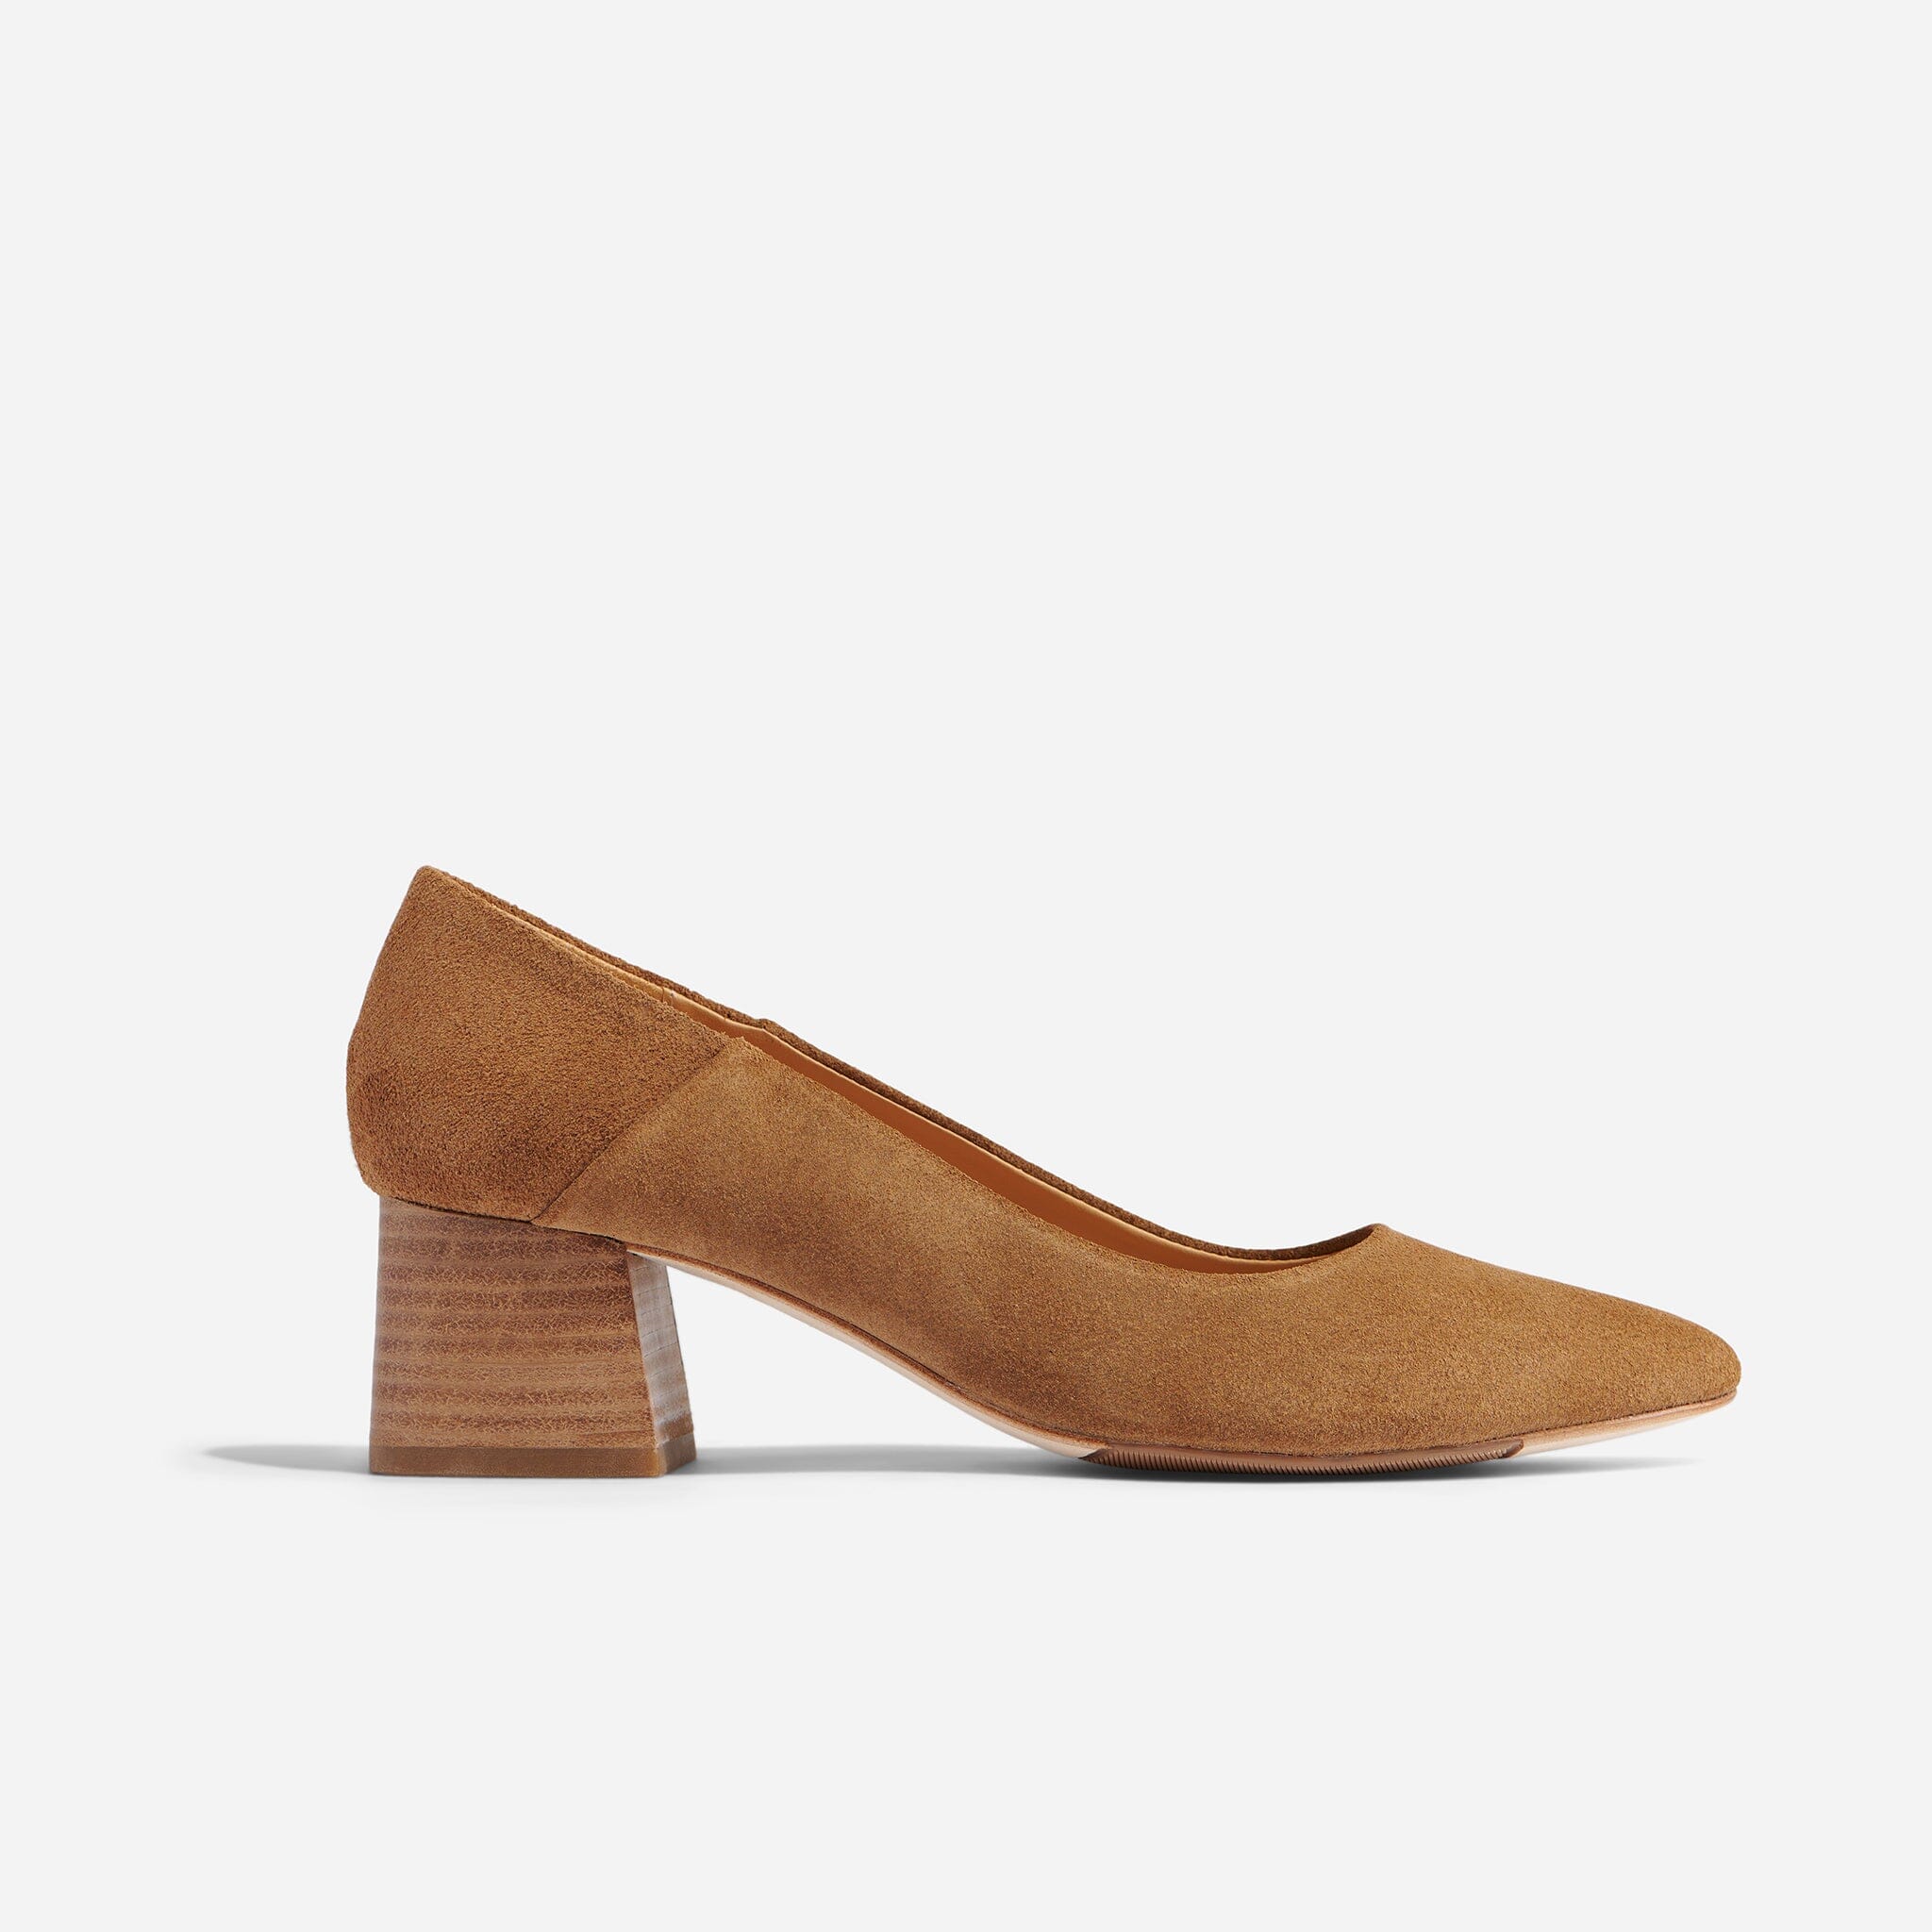 Shop Camille Sandal, Comfortable Shoes